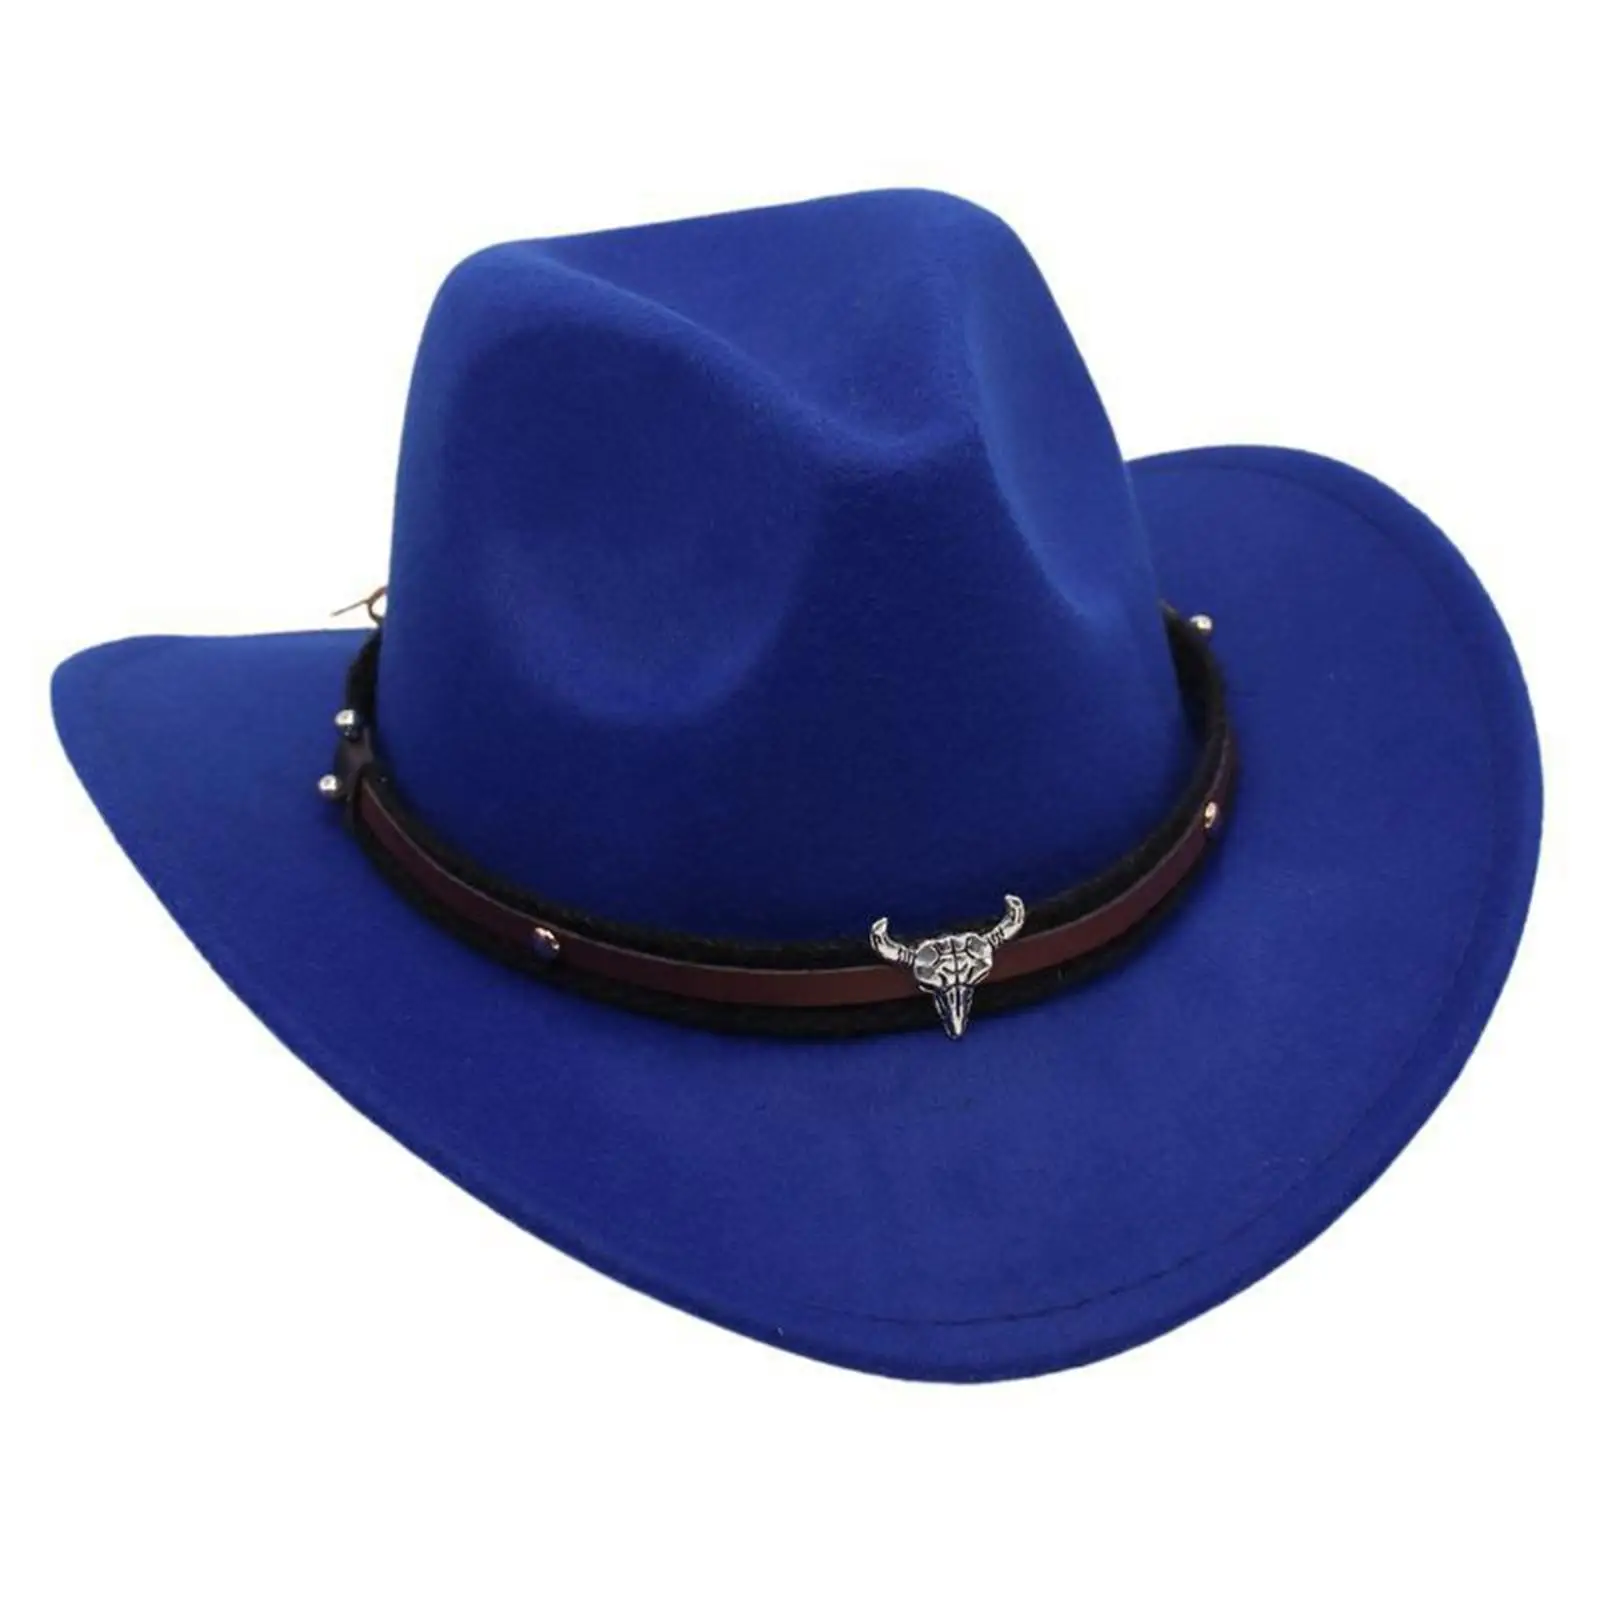 Batı kovboy şapkası Erkek Kız Yaz Gelin Nişan Parti Fotoğraf Sahne Rahat Açık Seyahat Kamp geniş şapka disko şapkası